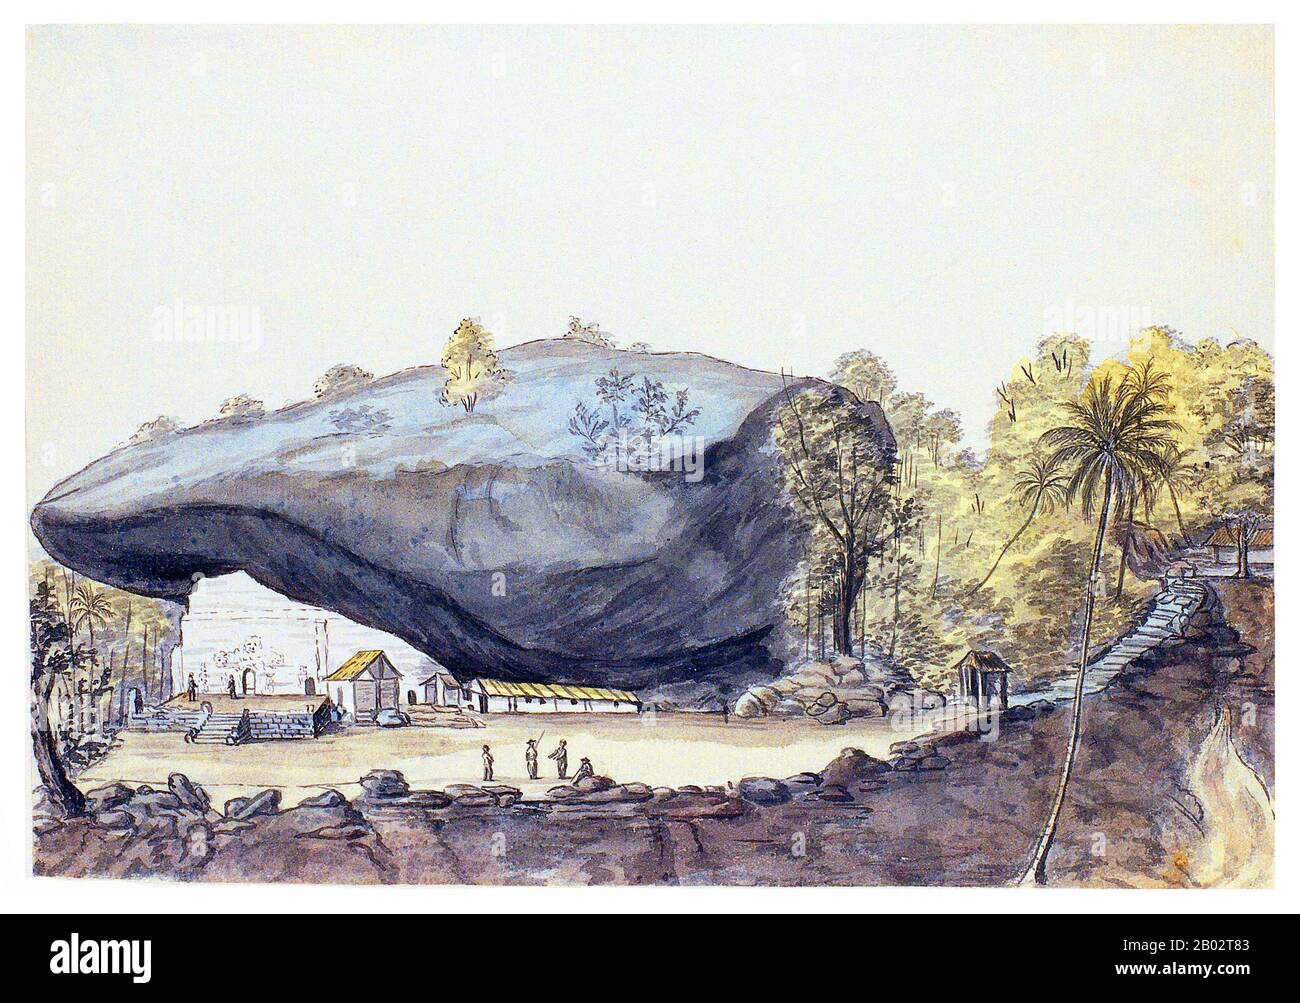 Der Kuragala-Höhlentempel ist eine alte buddhistische heilige Stätte in der Provinz Sabaragamuwa in Sri Lanka, die Wurzeln in der vorchristlichen Epoche hat und Anfang des 20. Jahrhunderts von der Abteilung für Archäologie des Landes als geschützter Ort erklärt wurde. Es gibt eine kleine Moschee und einen Schrein an dem Ort, der von Dafthar Jailani, einer Sufi-Gruppe, zum Beten benutzt wird. Die Moschee und der Tempel bestehen seit dem 10. Jahrhundert. Stockfoto